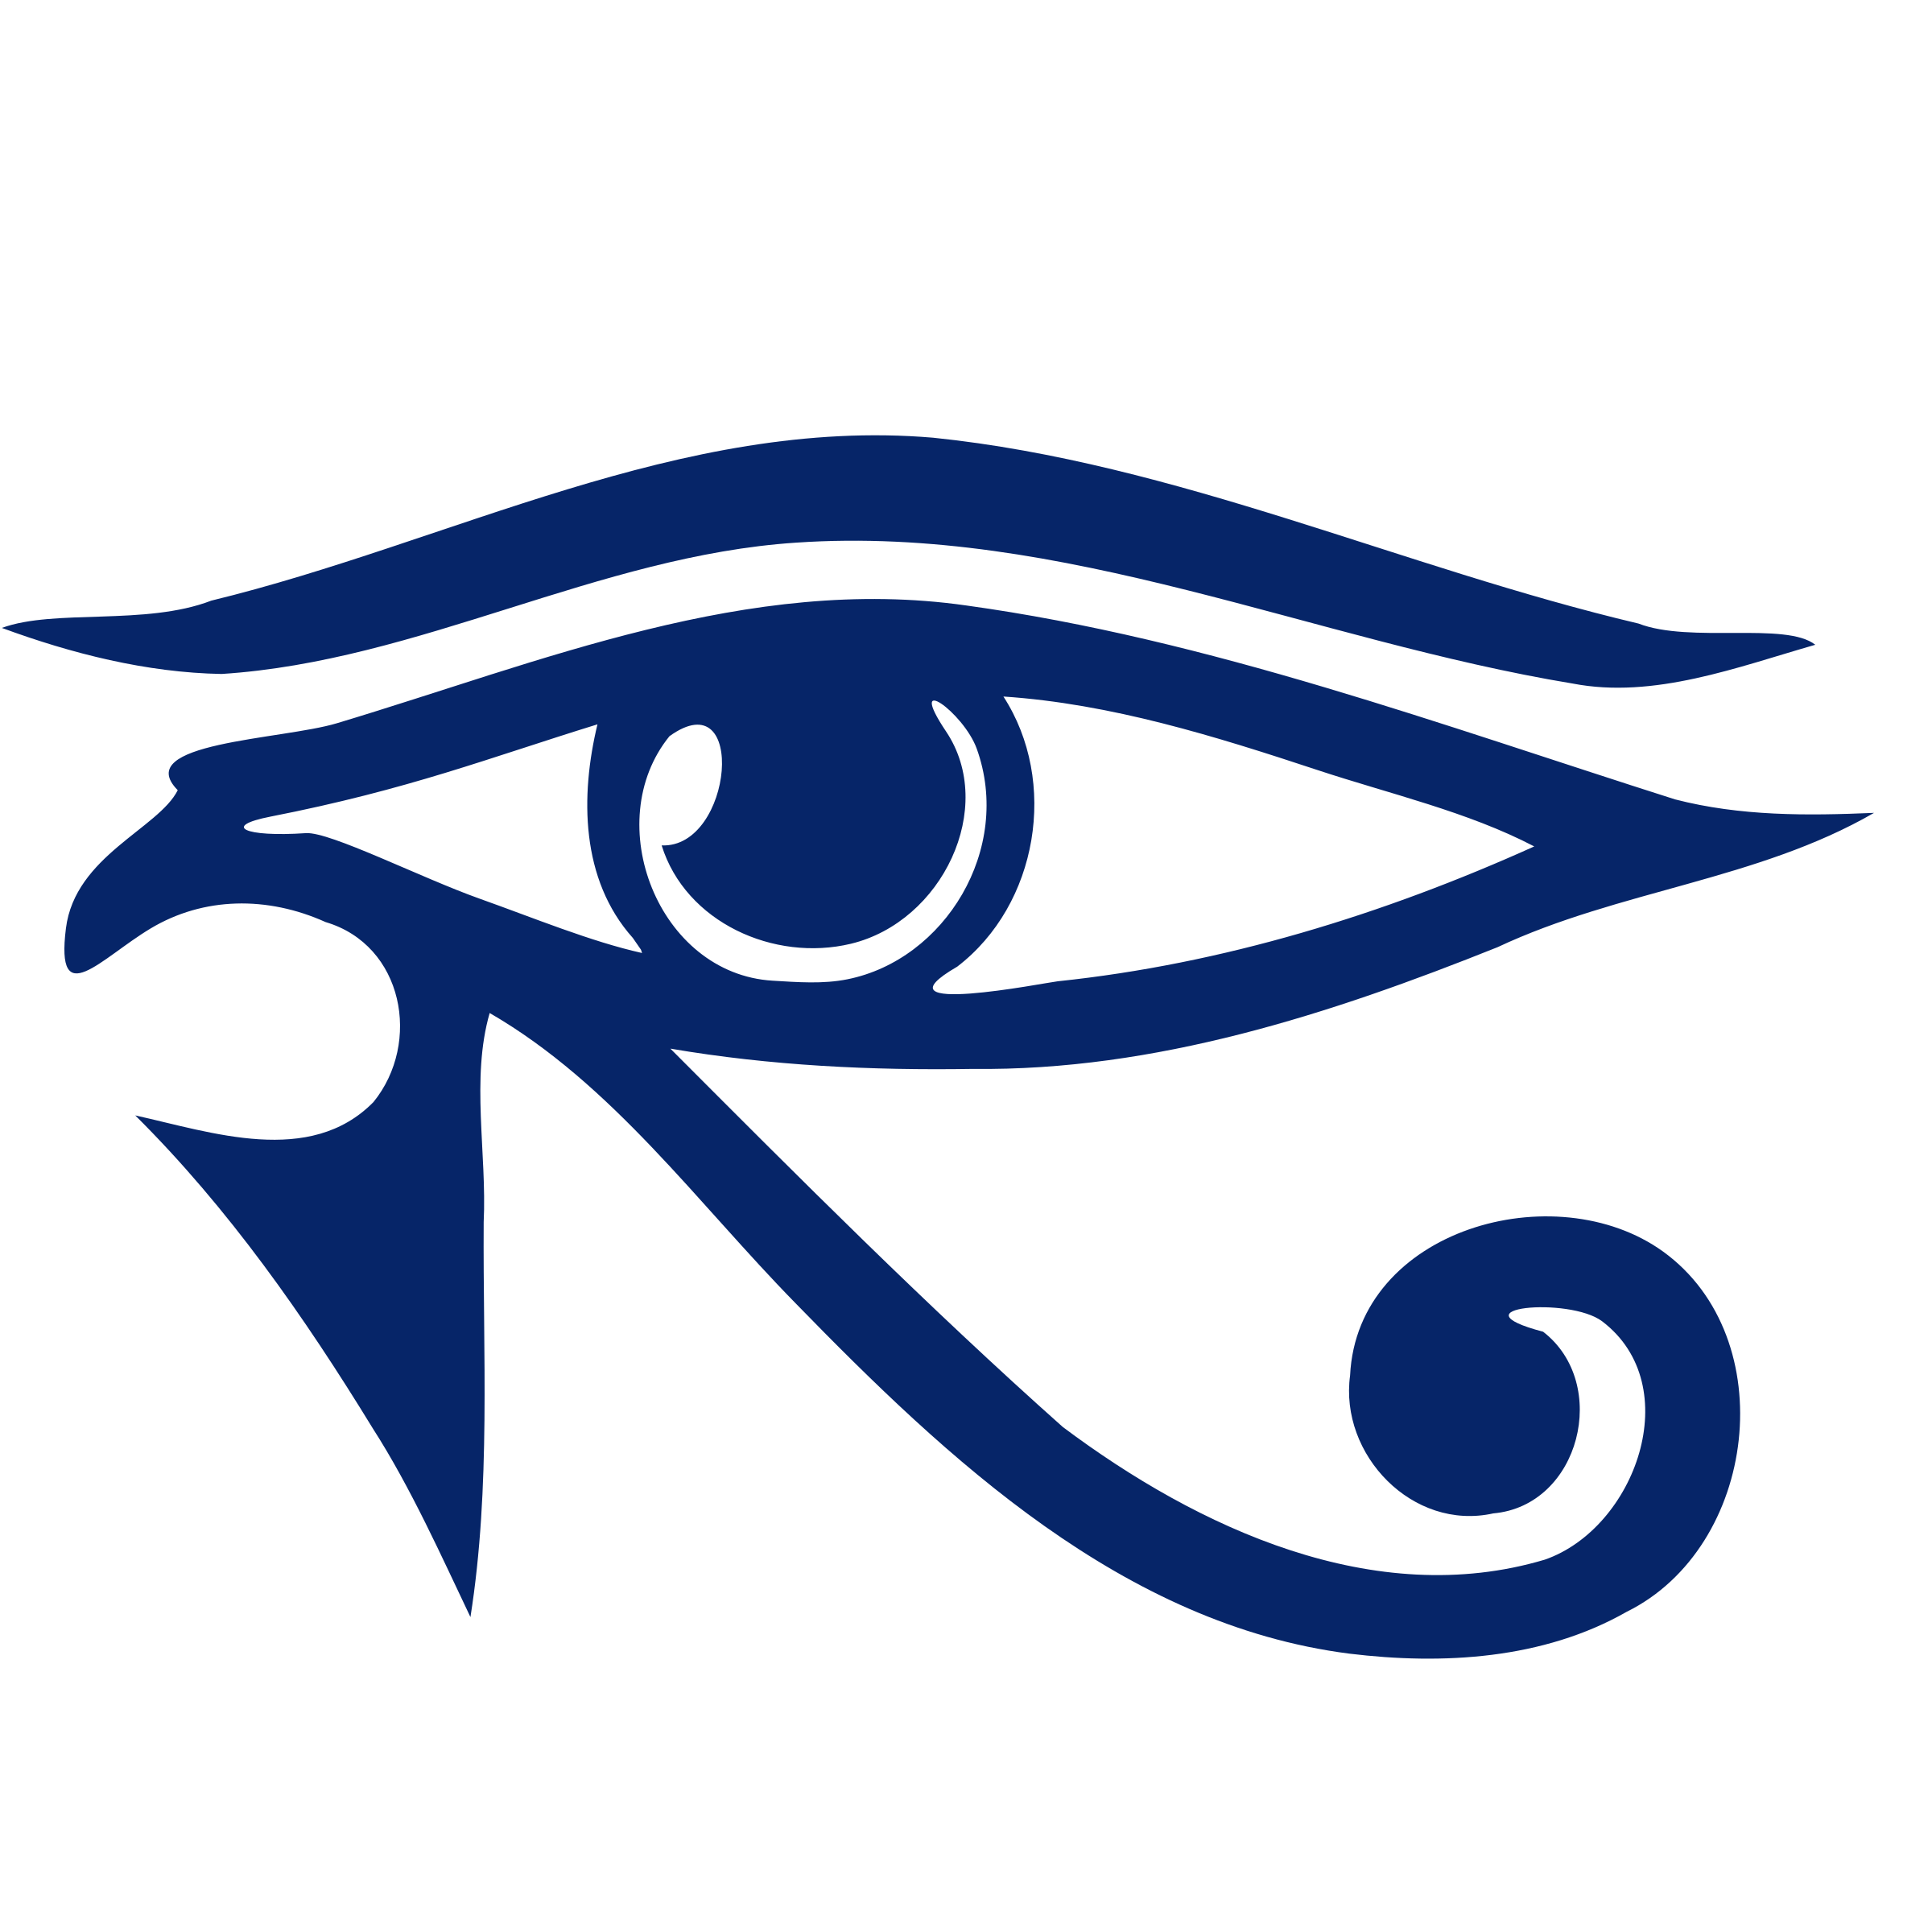 Eye of Horus - Ojo de Horus SVG Clip arts